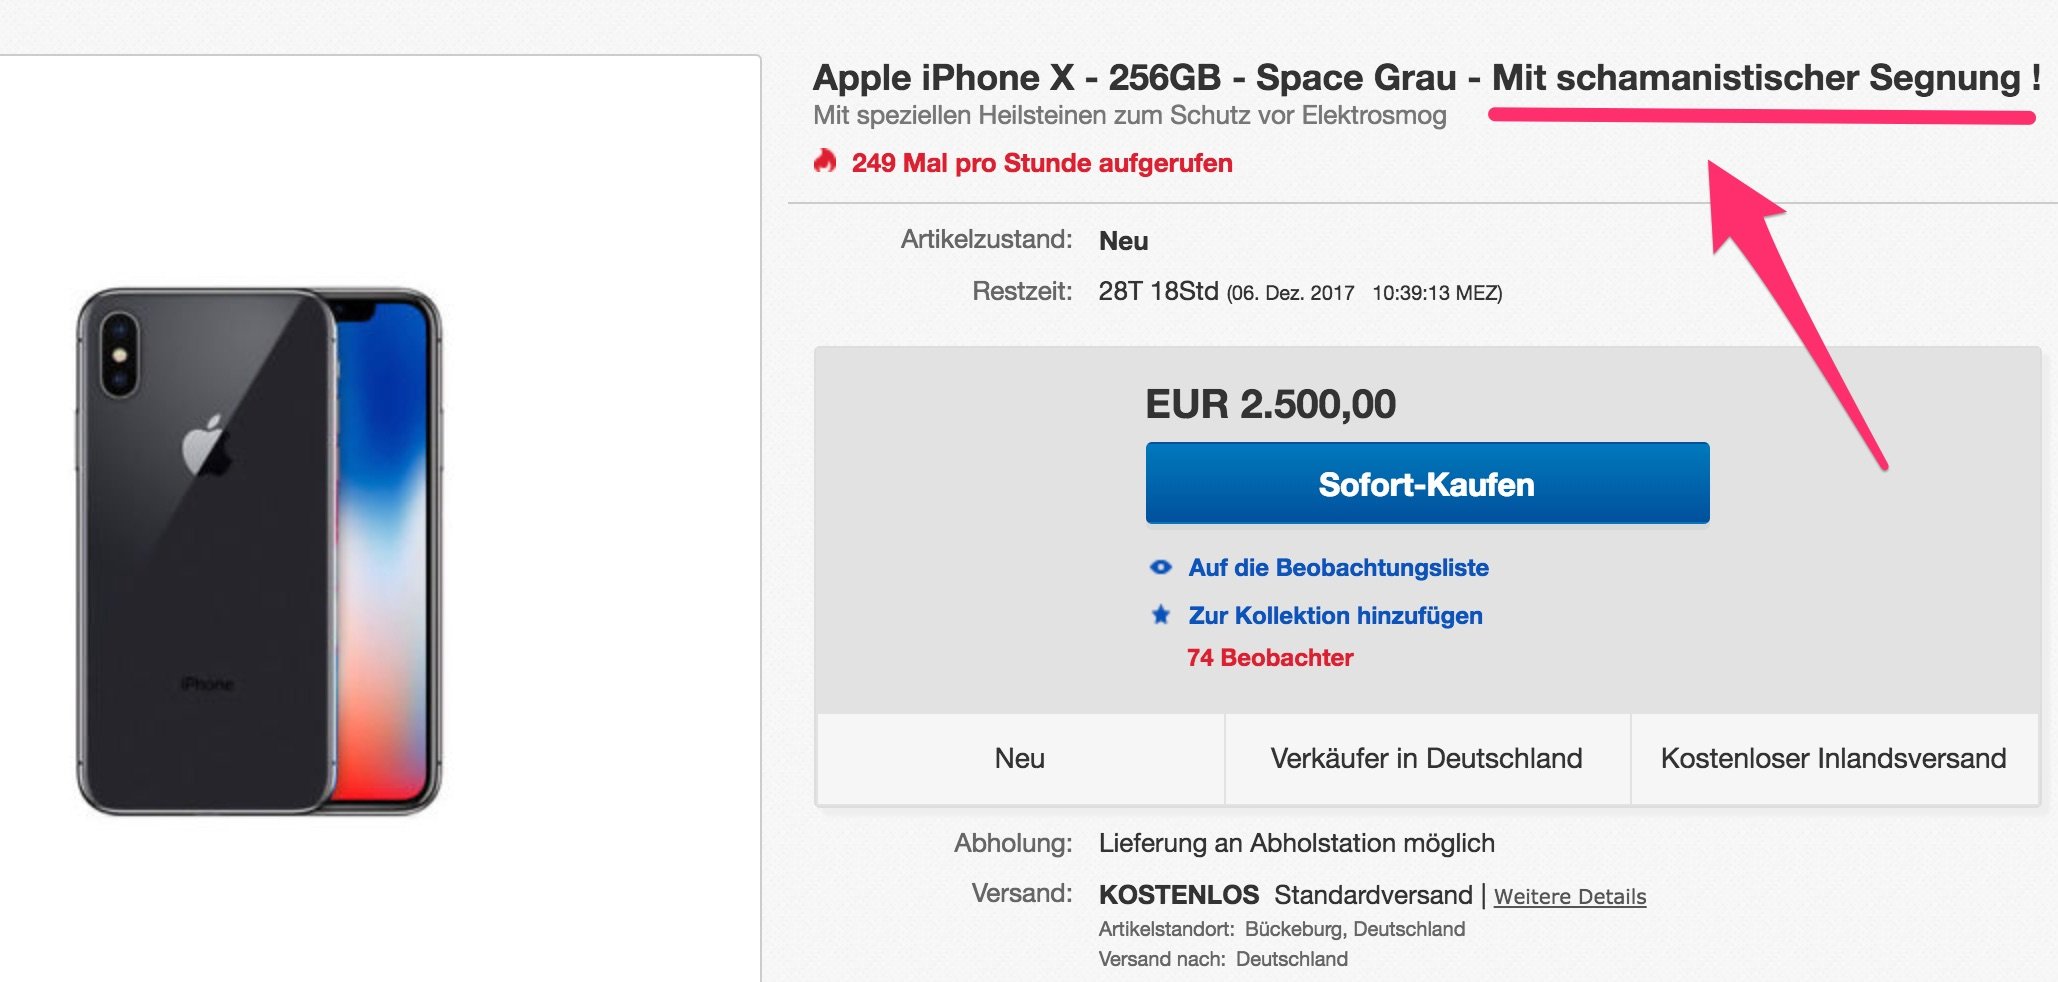 ebay: iPhone X mit Heilsteinen zum Schutz vor Elektrosmog 1